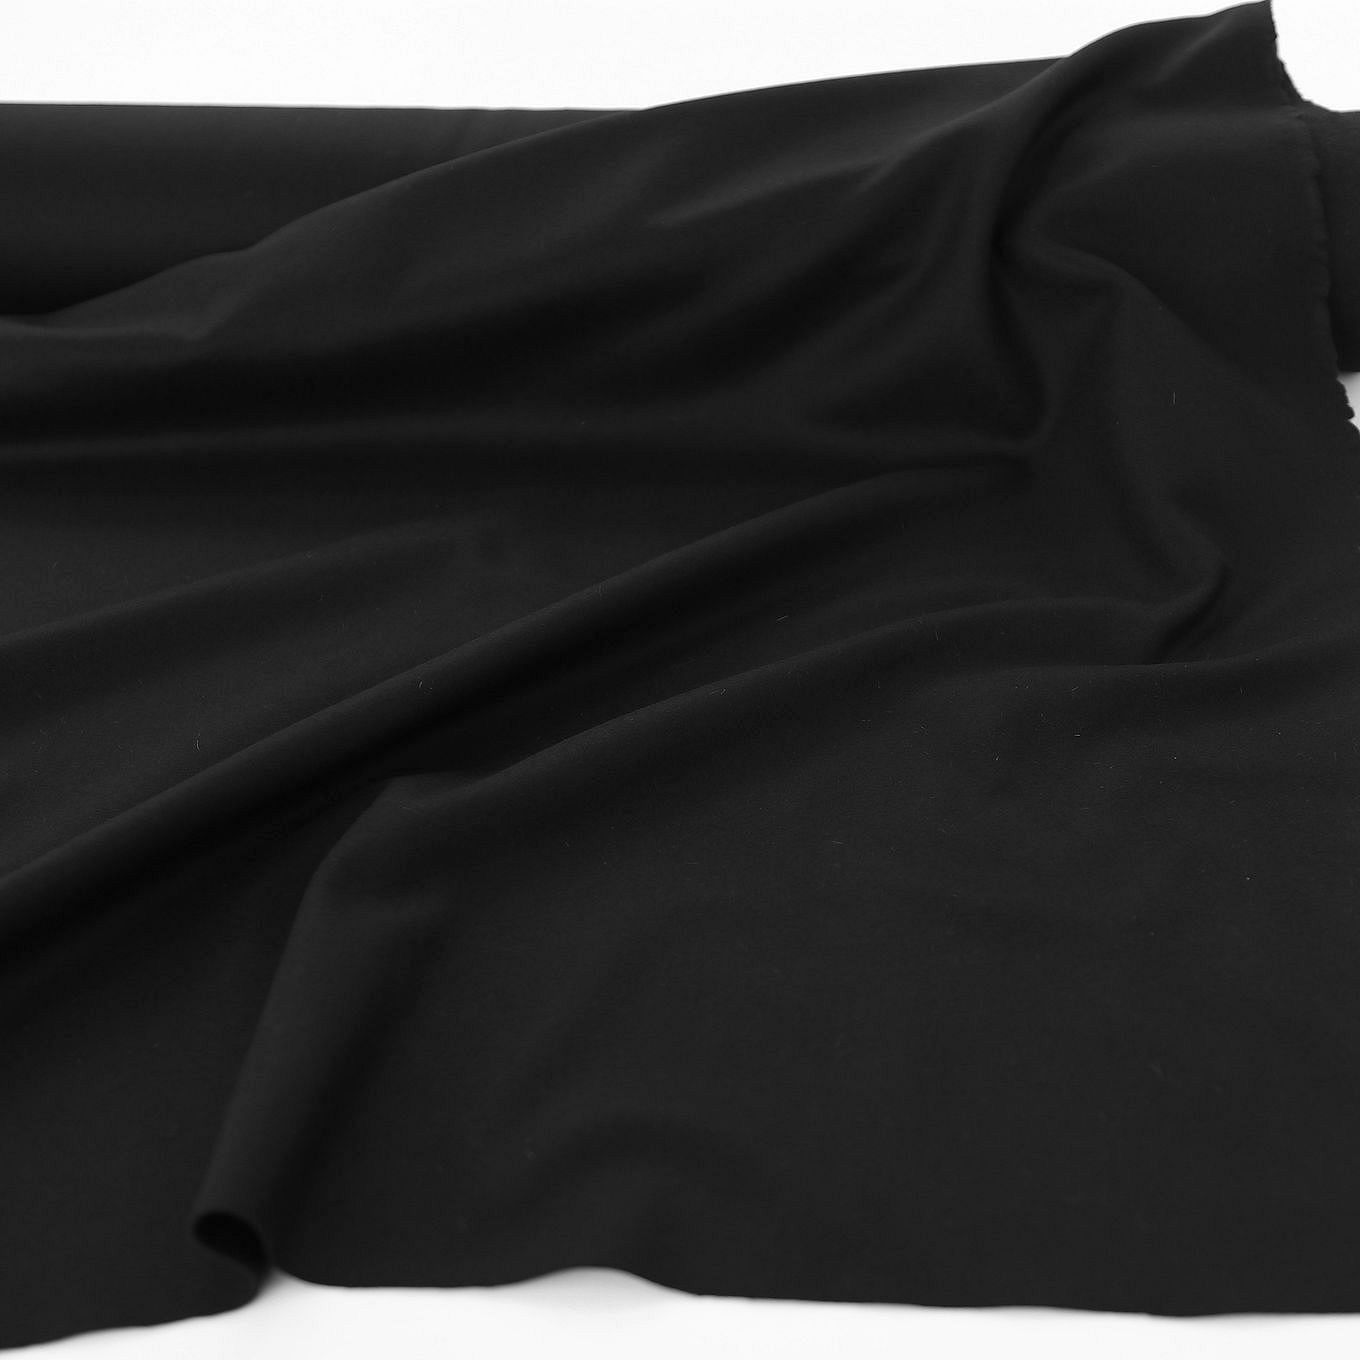 schwarz Loden-Stoff weich warm Winter-Bekleidung Mantel Woll-Tuch Meterware